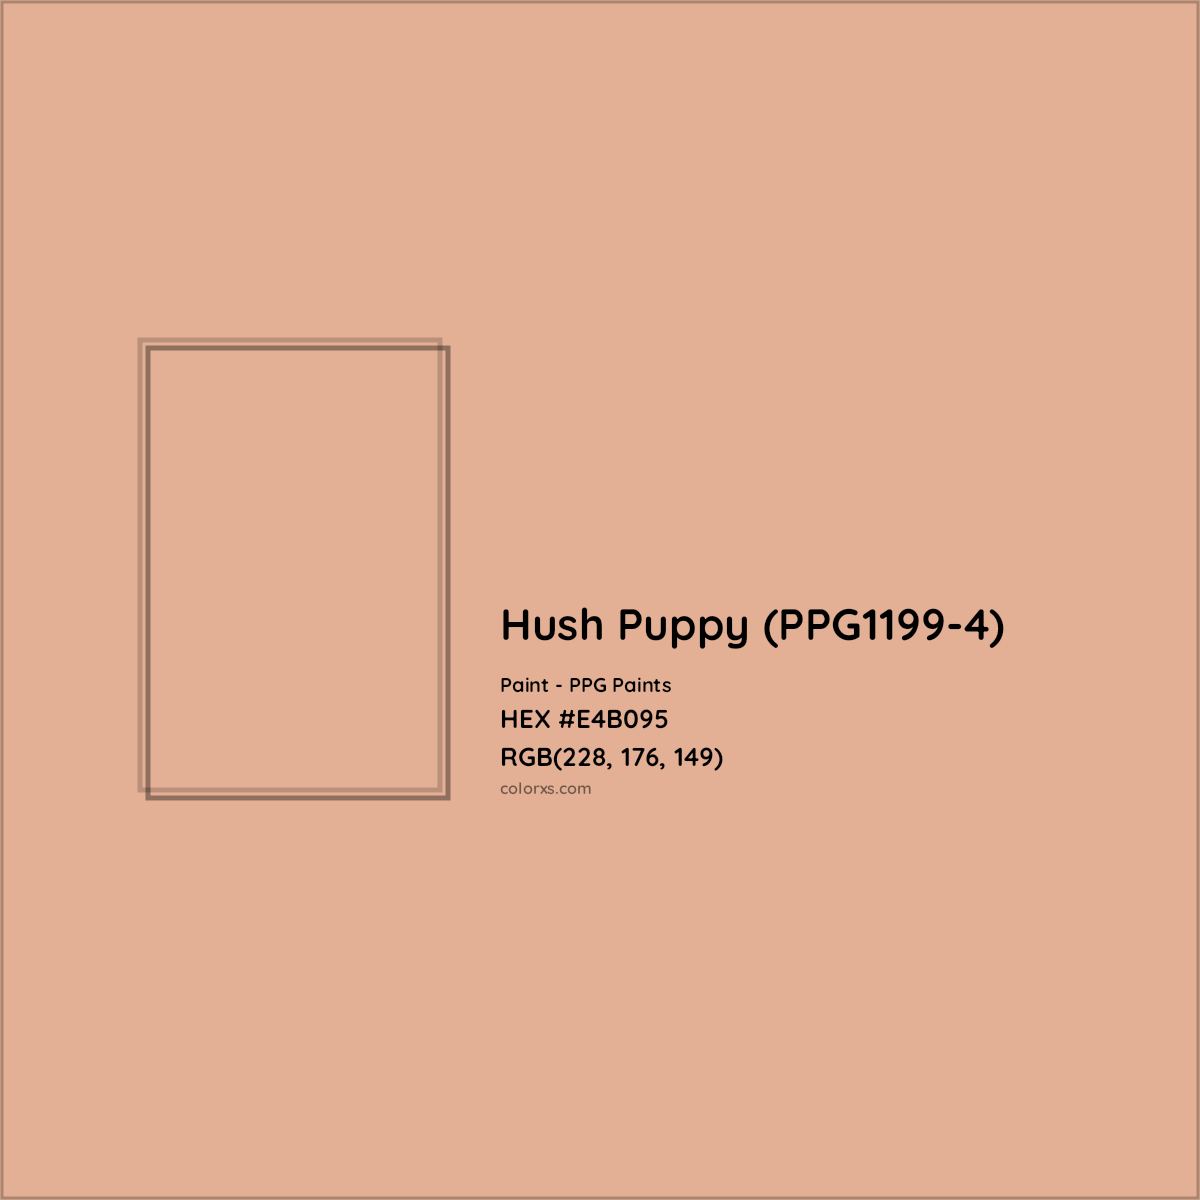 HEX #E4B095 Hush Puppy (PPG1199-4) Paint PPG Paints - Color Code